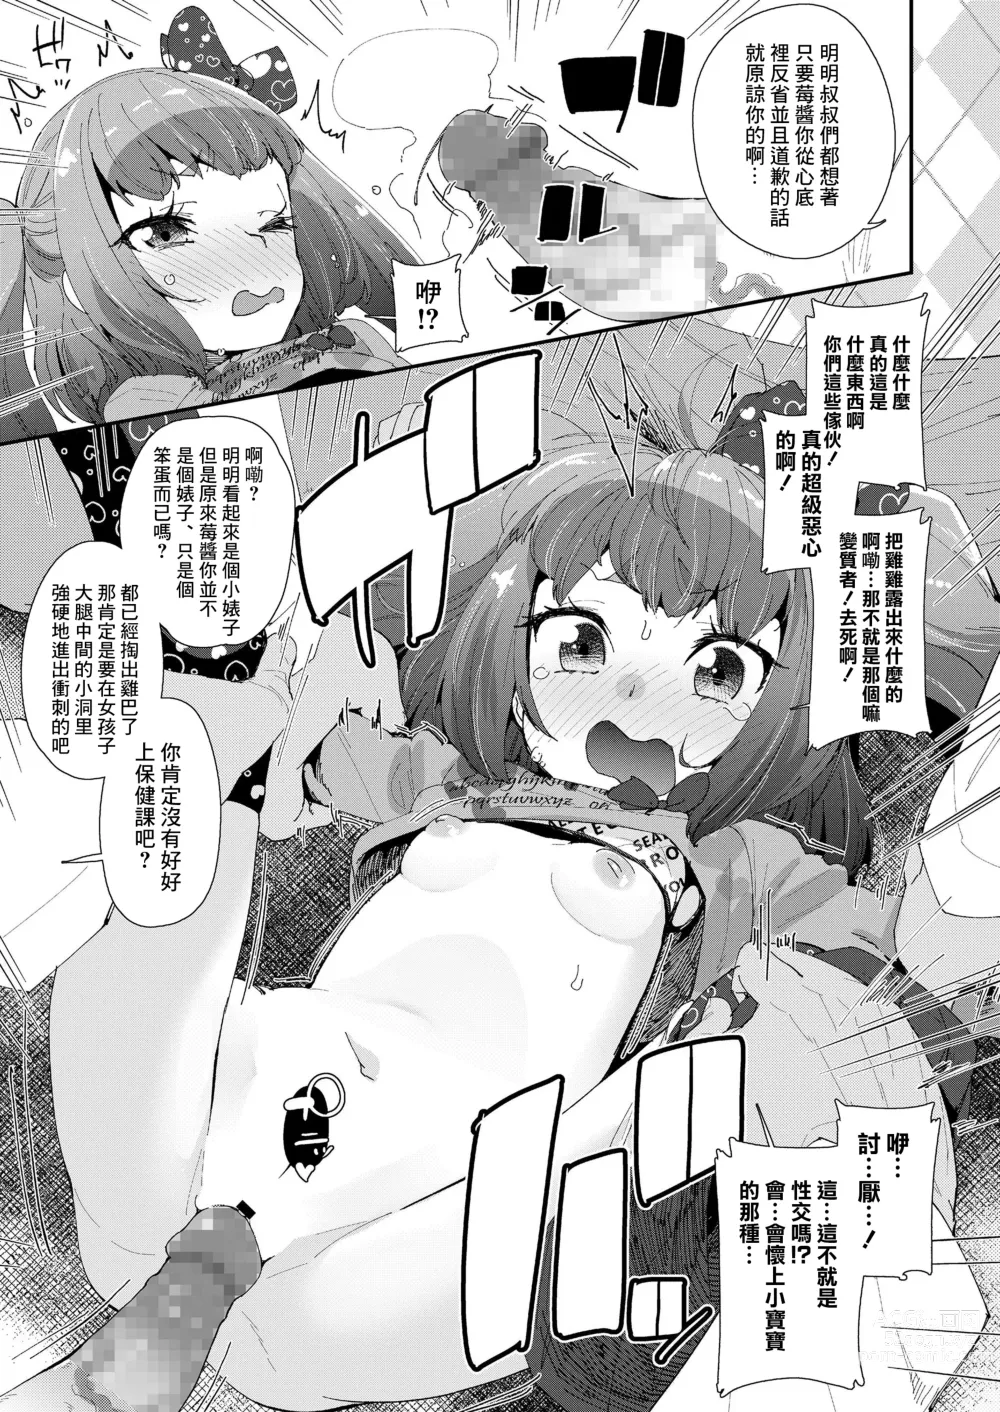 Page 7 of manga Iiko ni Naare